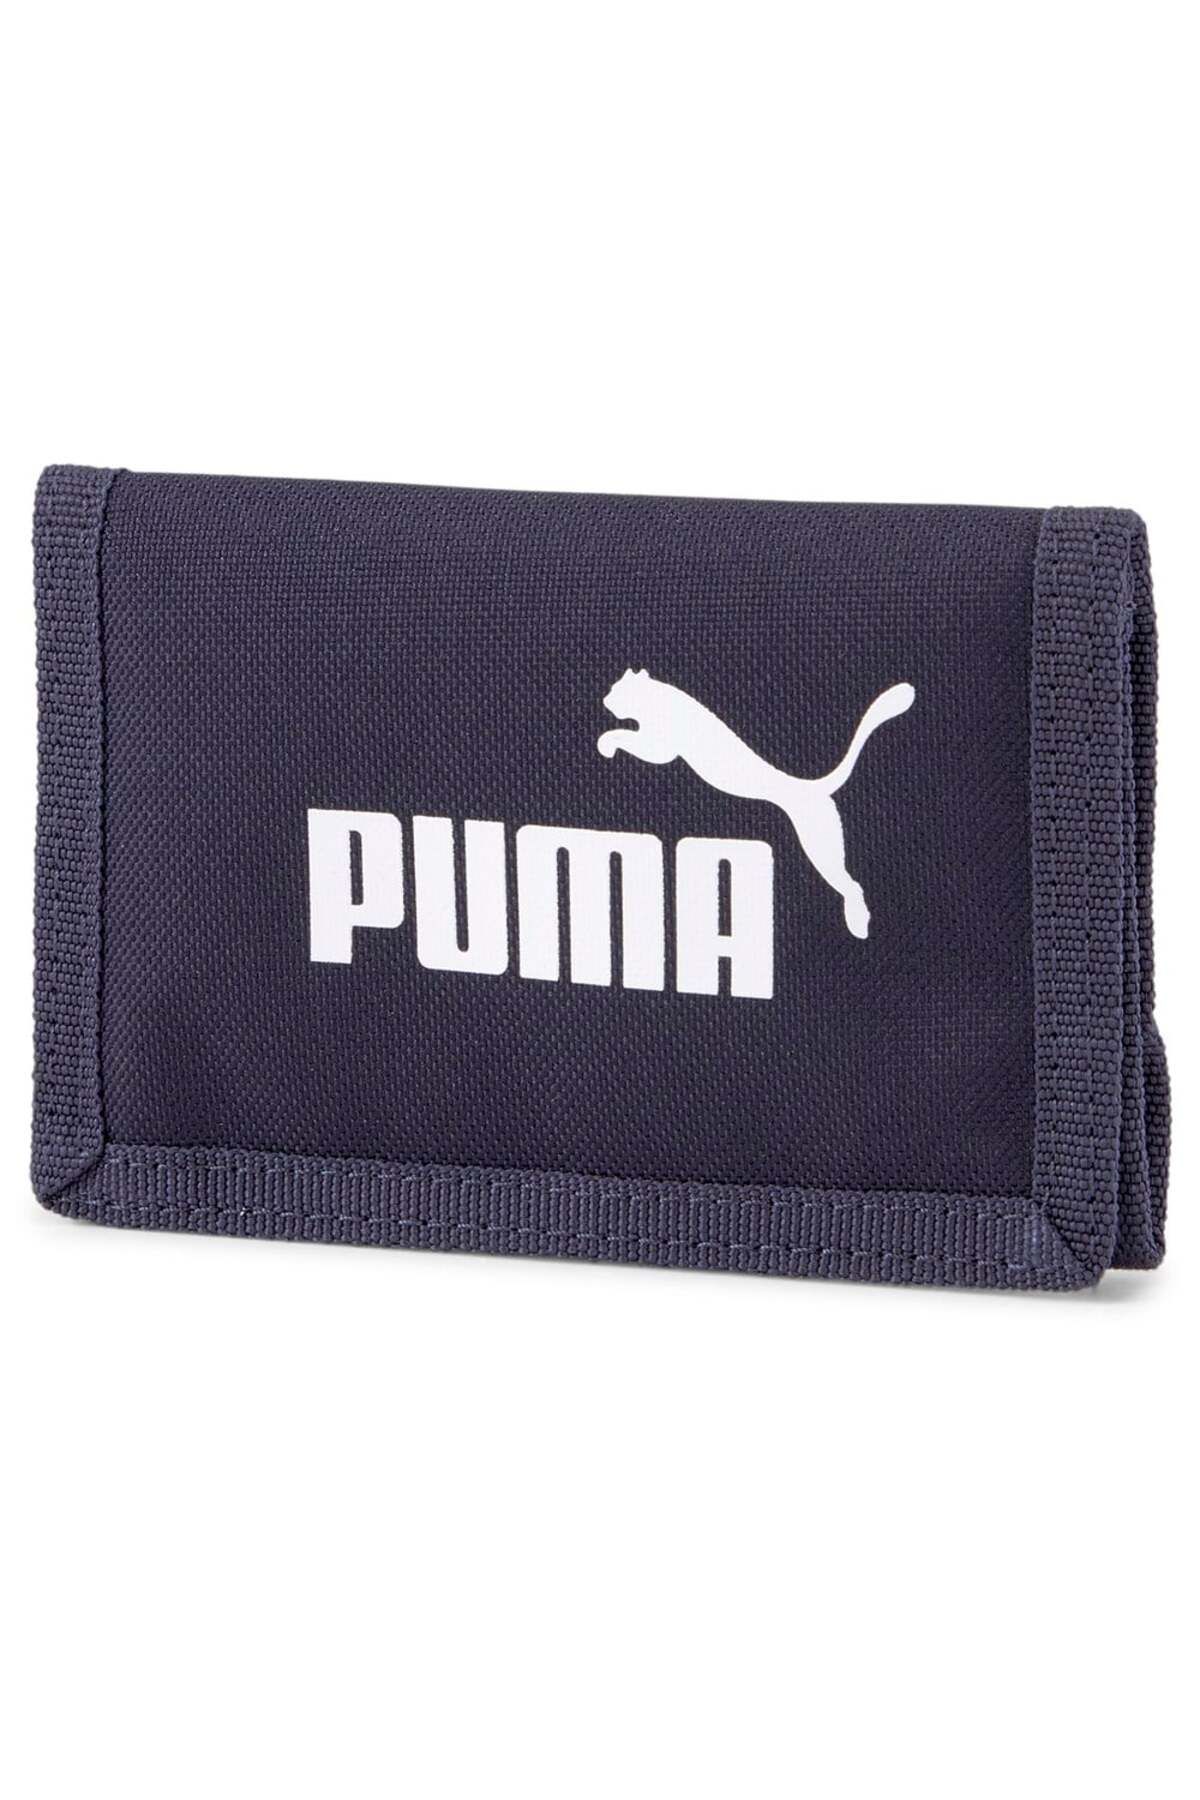 Puma Phase Cüzdan 07561743